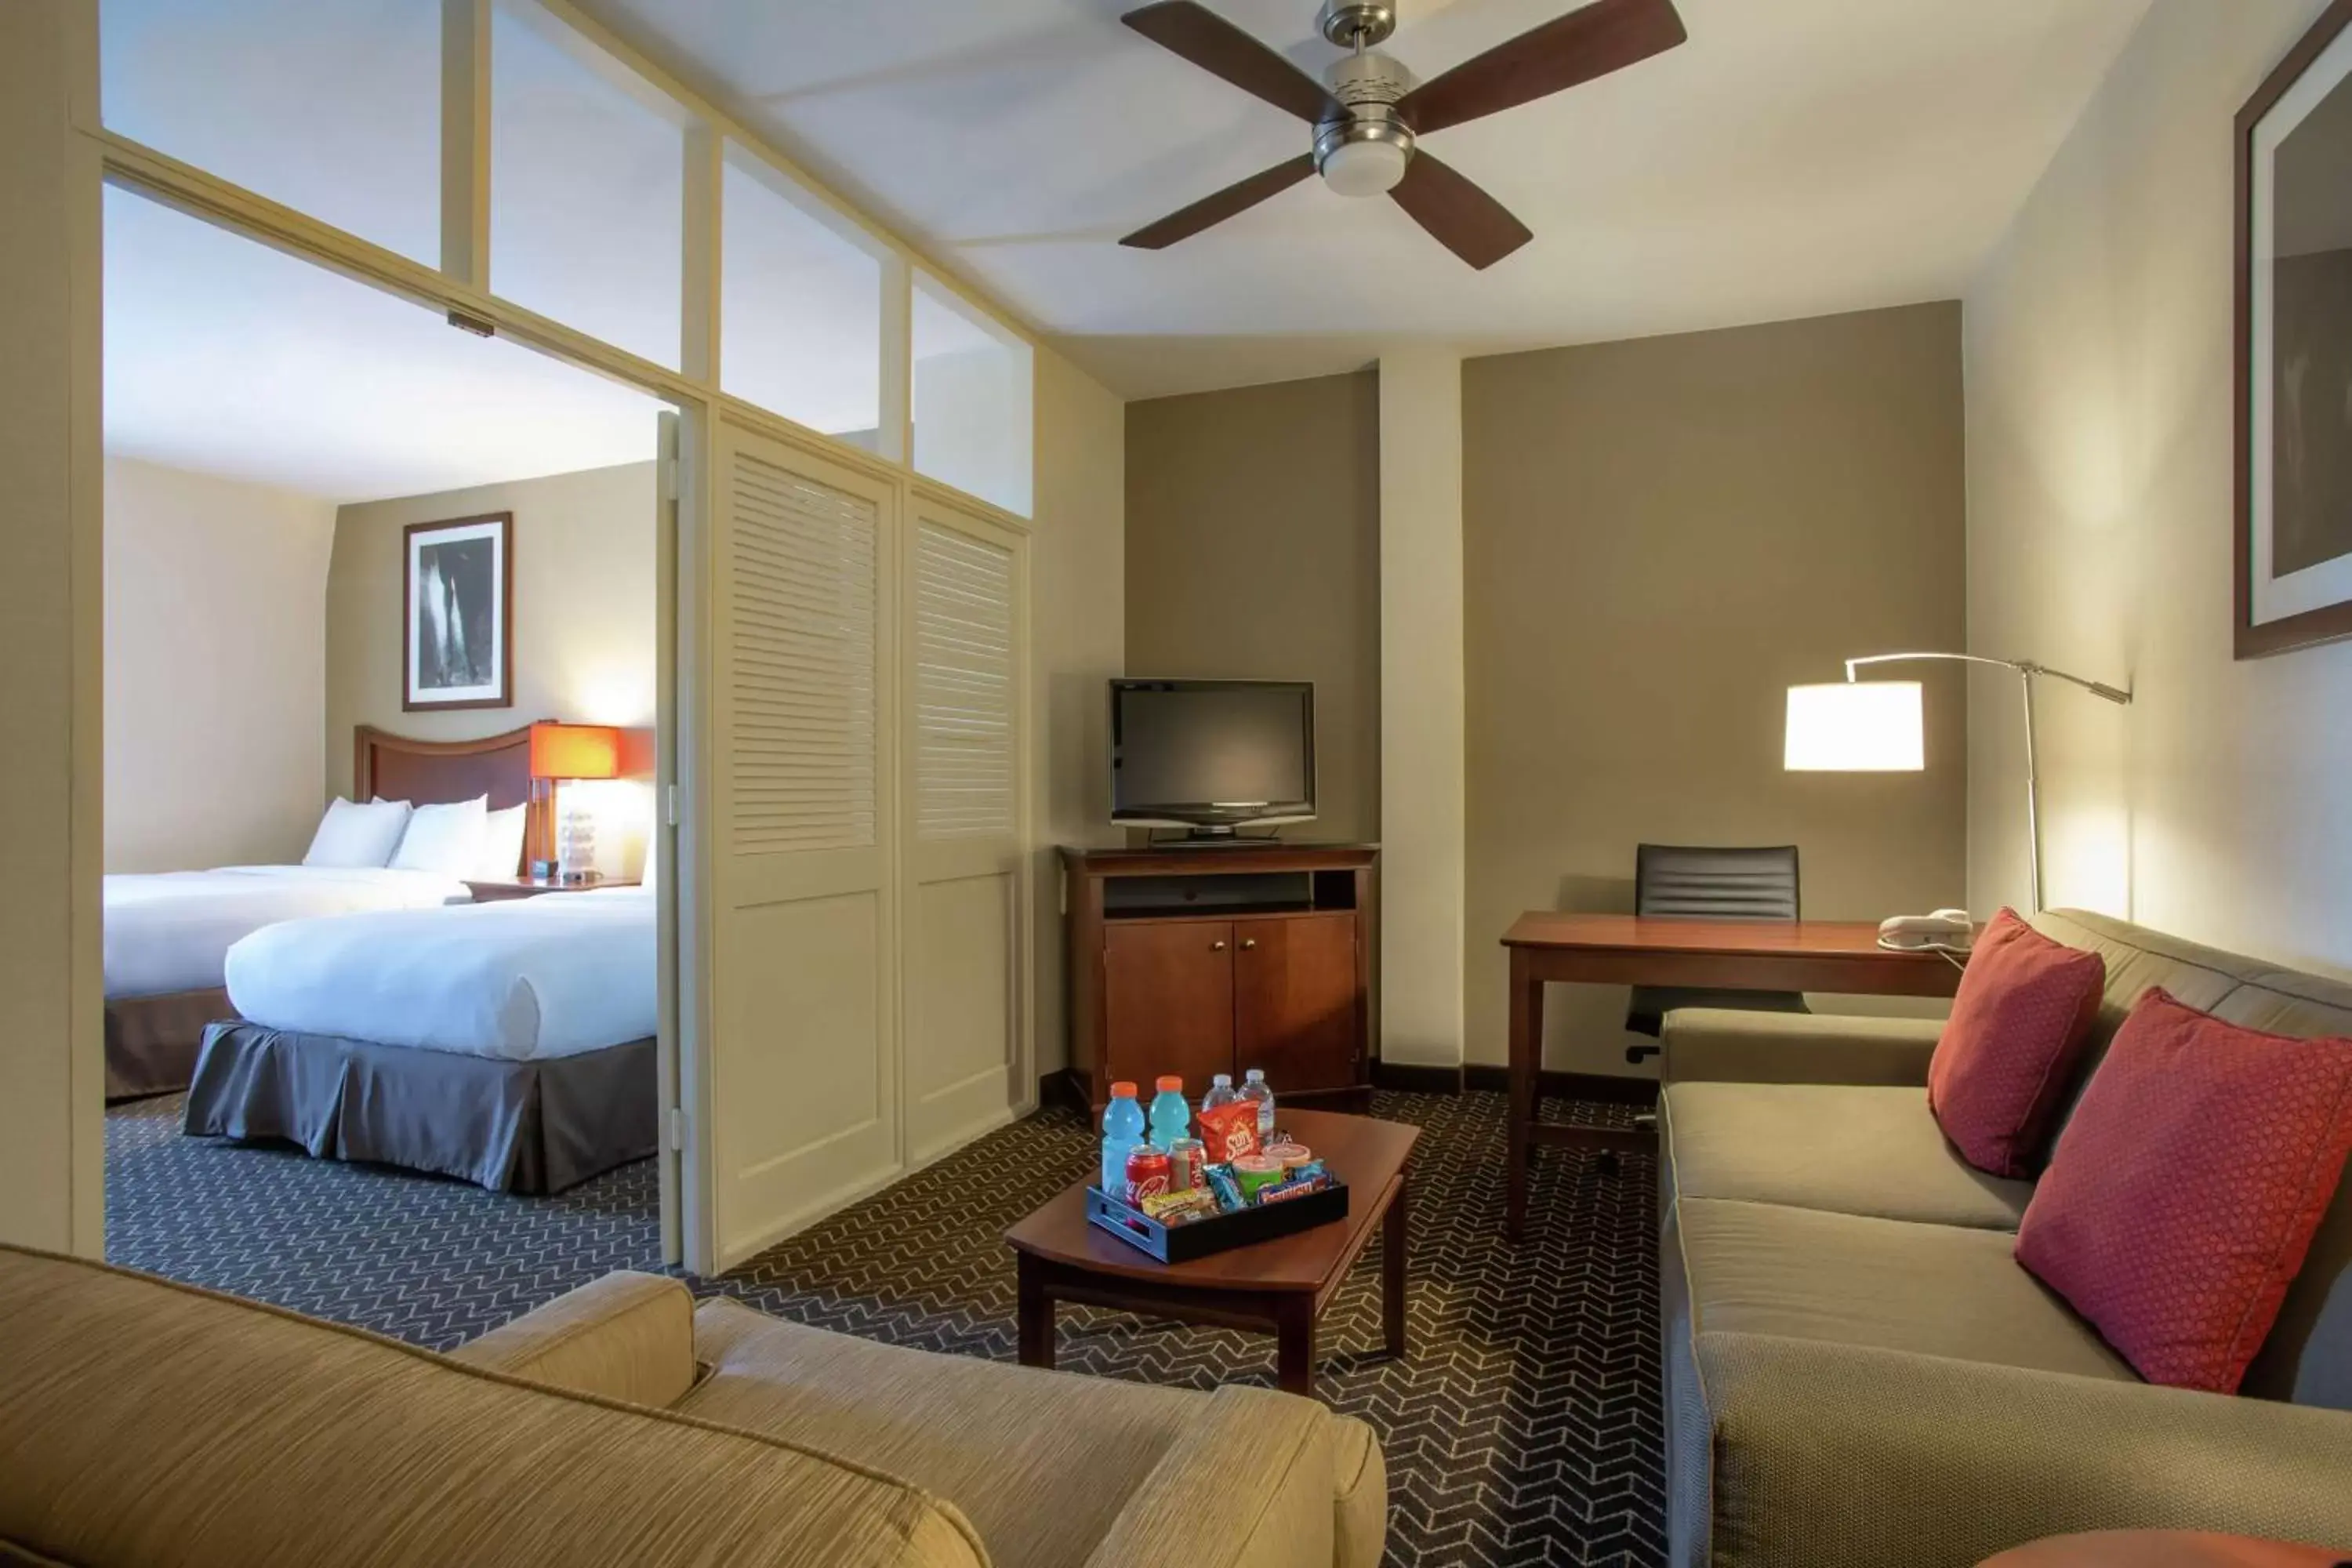 Bedroom, TV/Entertainment Center in DoubleTree Suites by Hilton Lexington